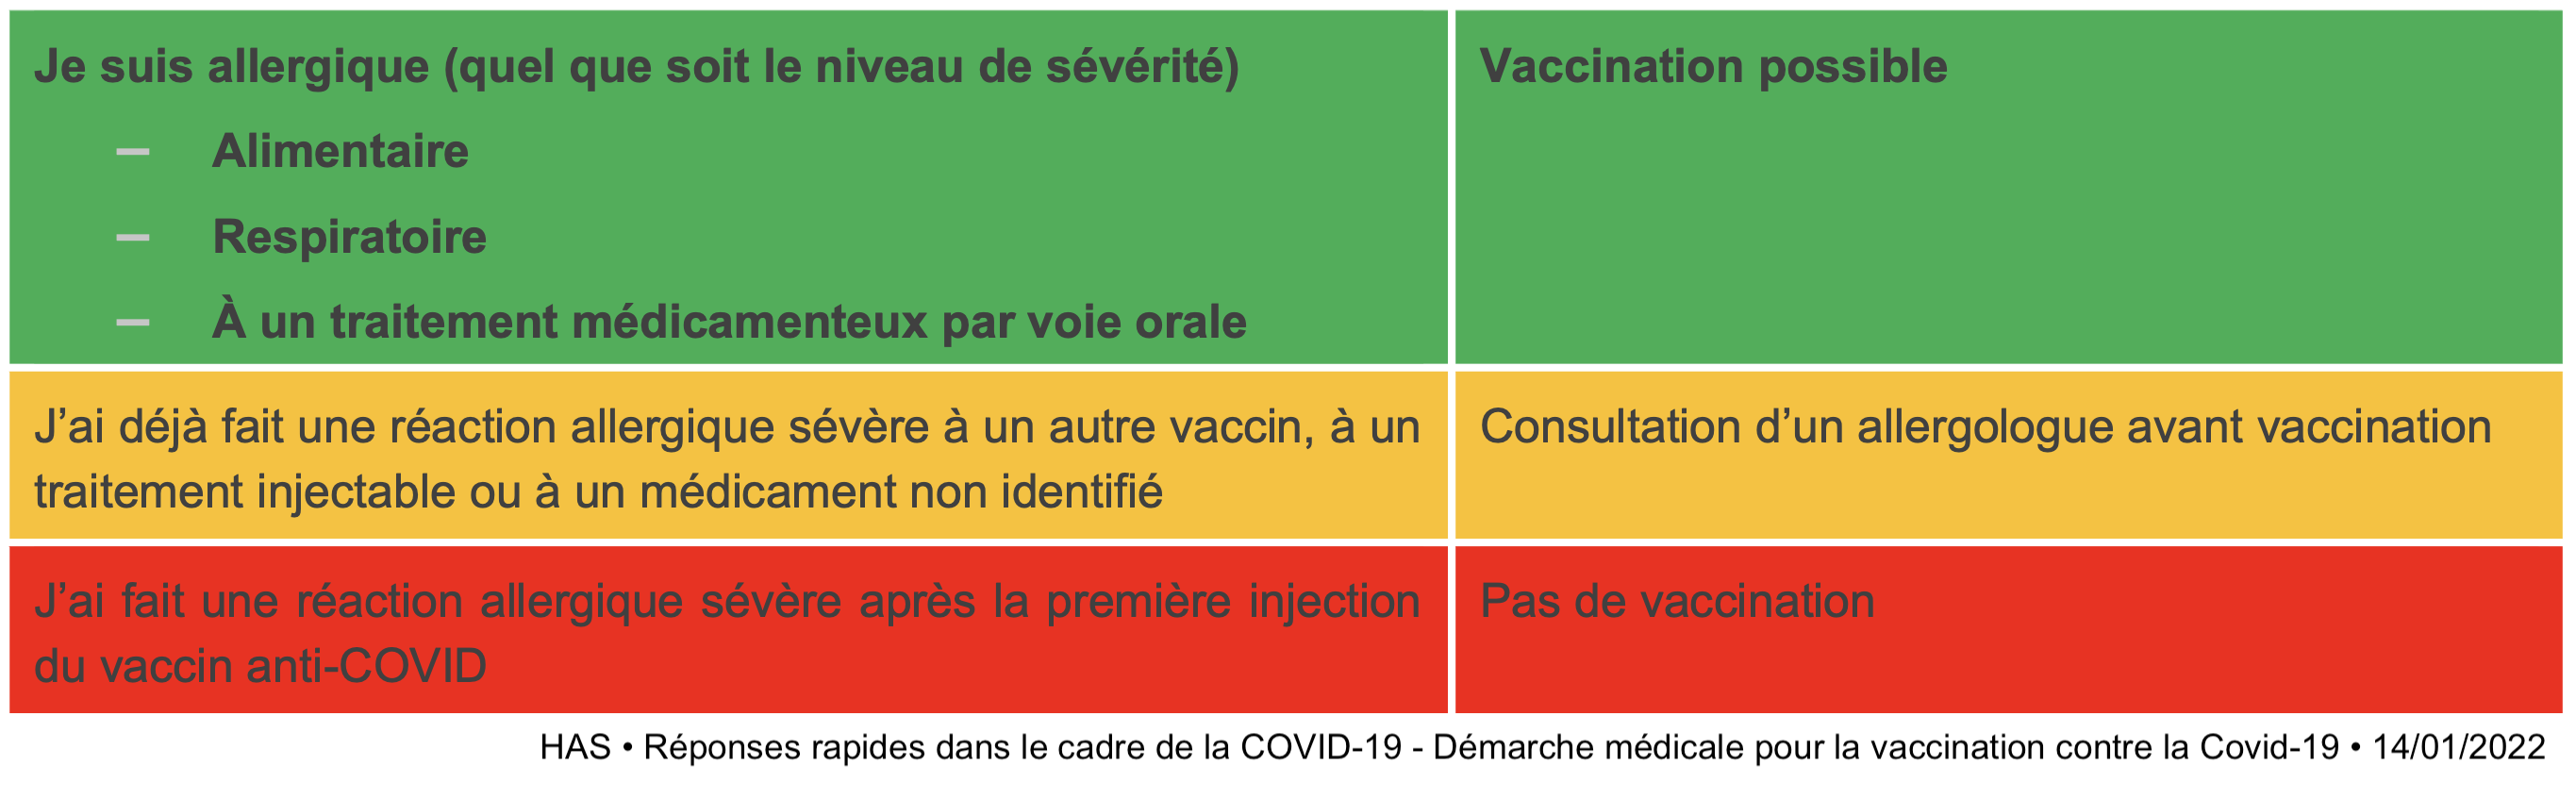 enfants 2 carnets de vaccination Édition 2021 Certificat international sur les vaccinations pour bébés adolescents adultes avec covid supplémentaire de 19 pages 